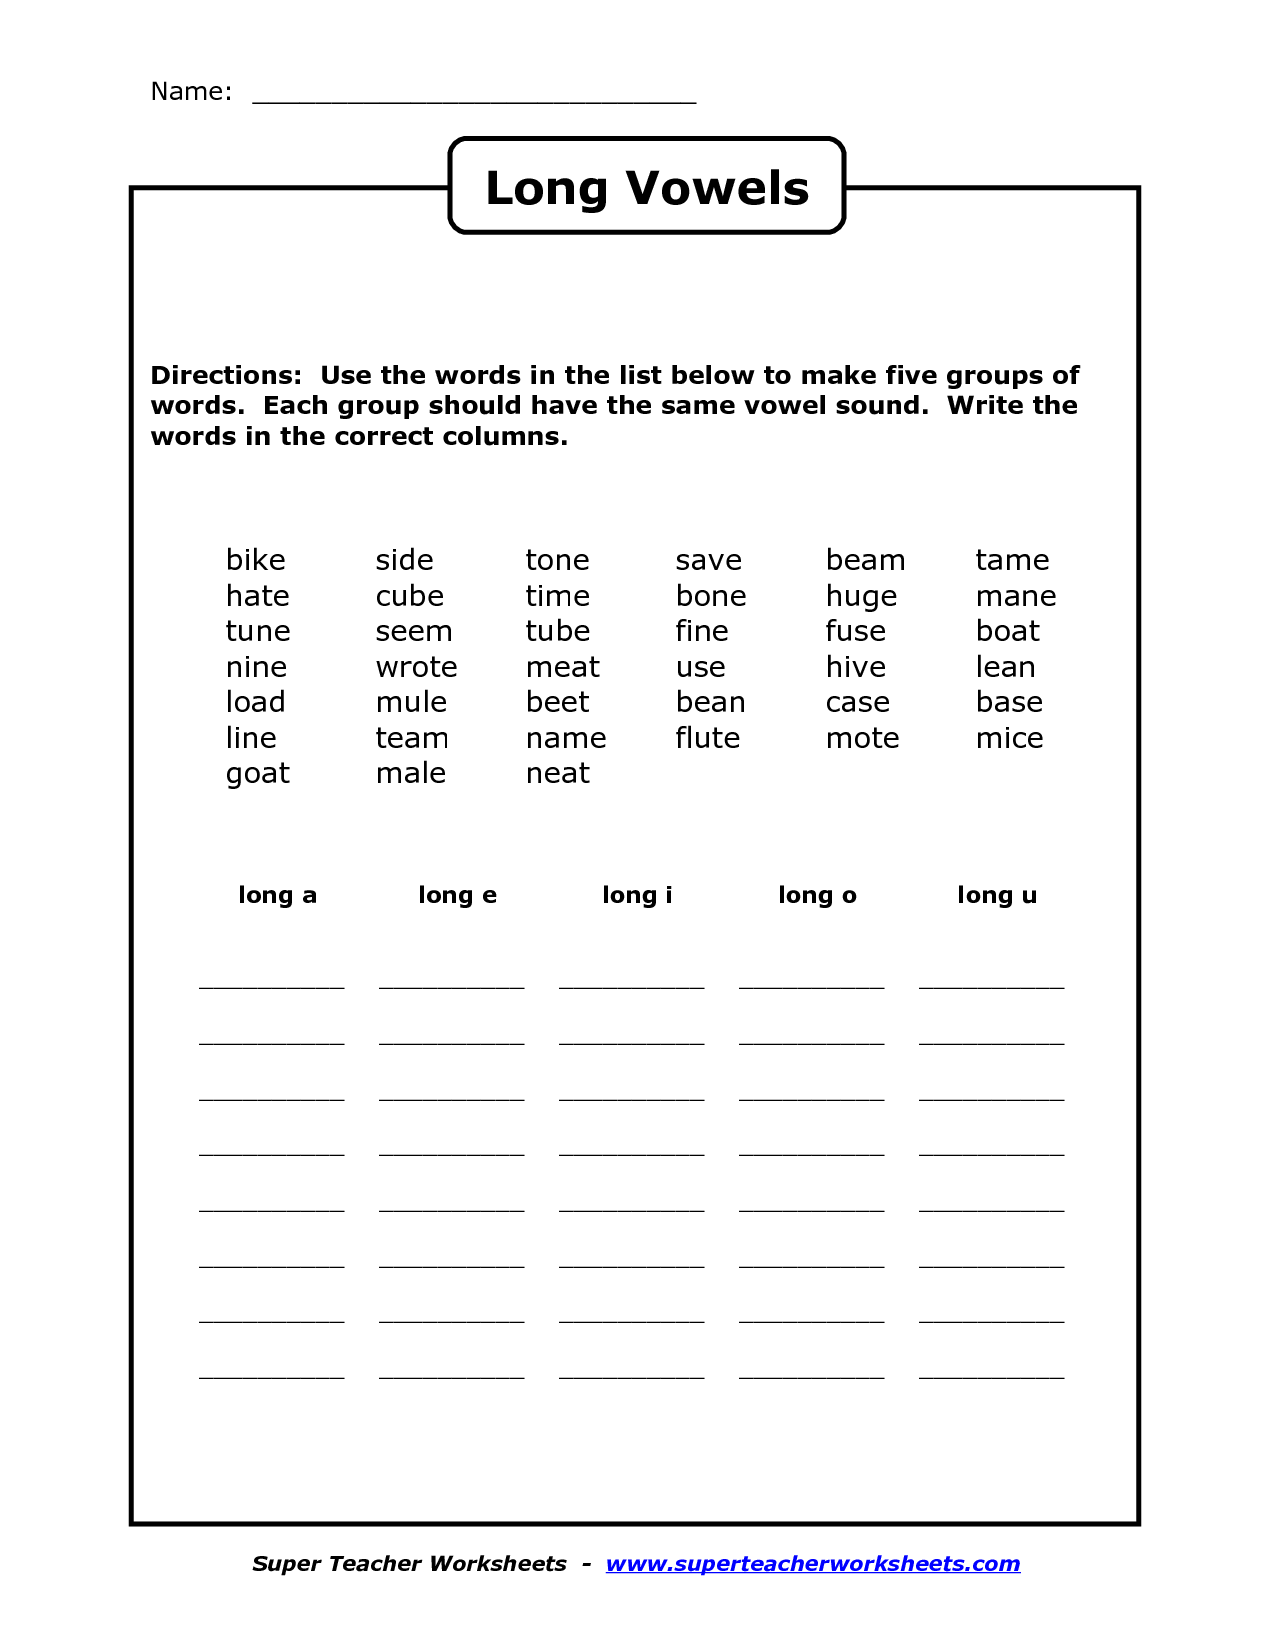 Short Long Vowels Worksheets